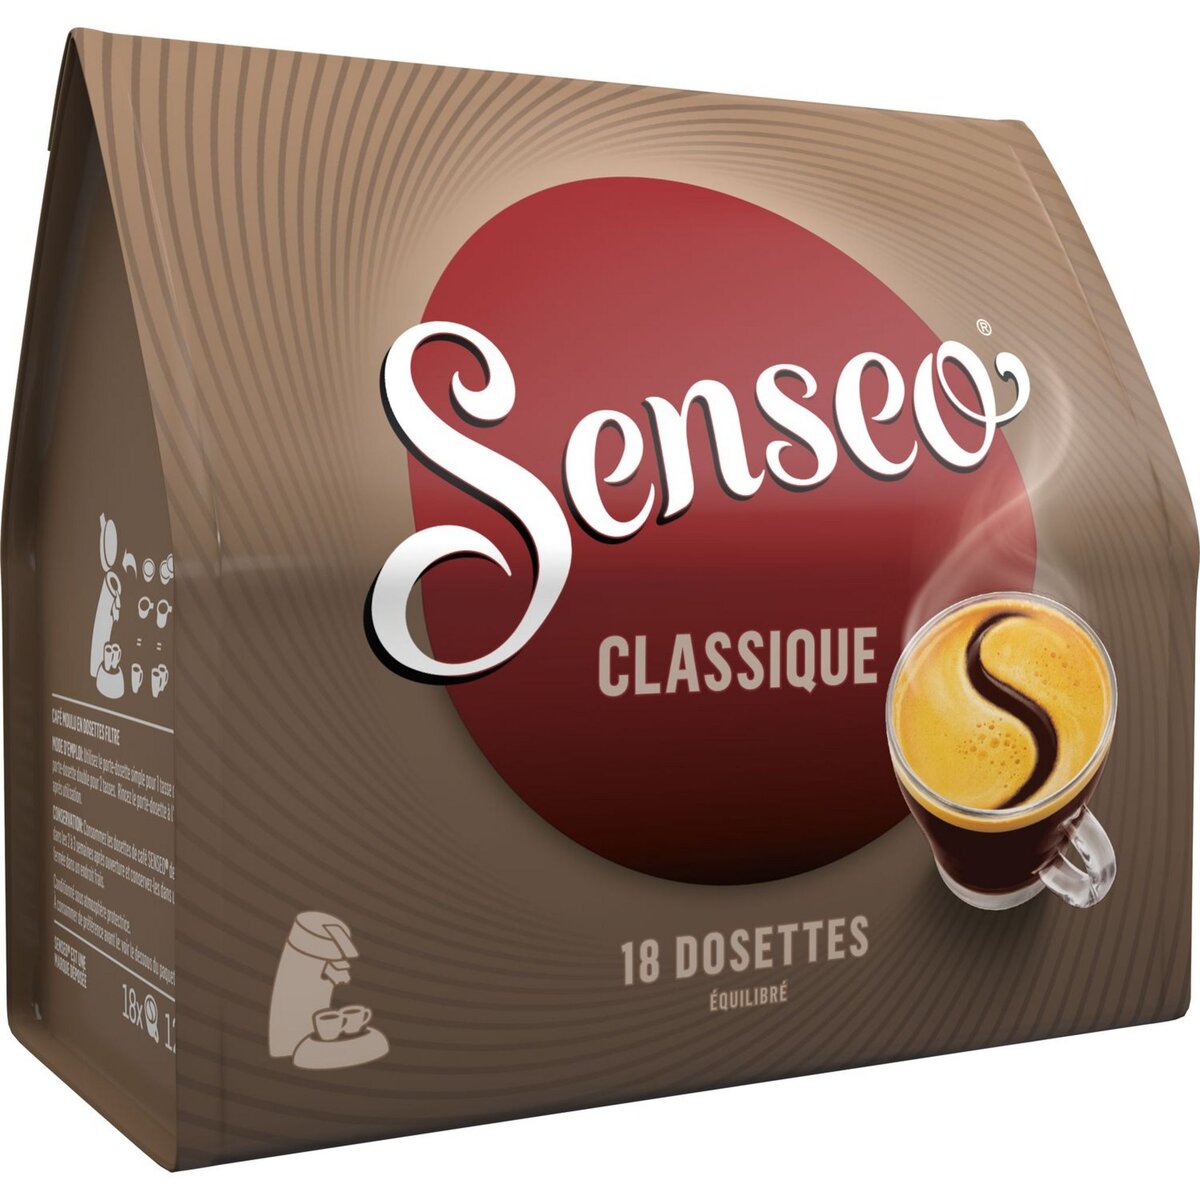 SENSEO Senseo café extra long doux dosette x20 -250g pas cher